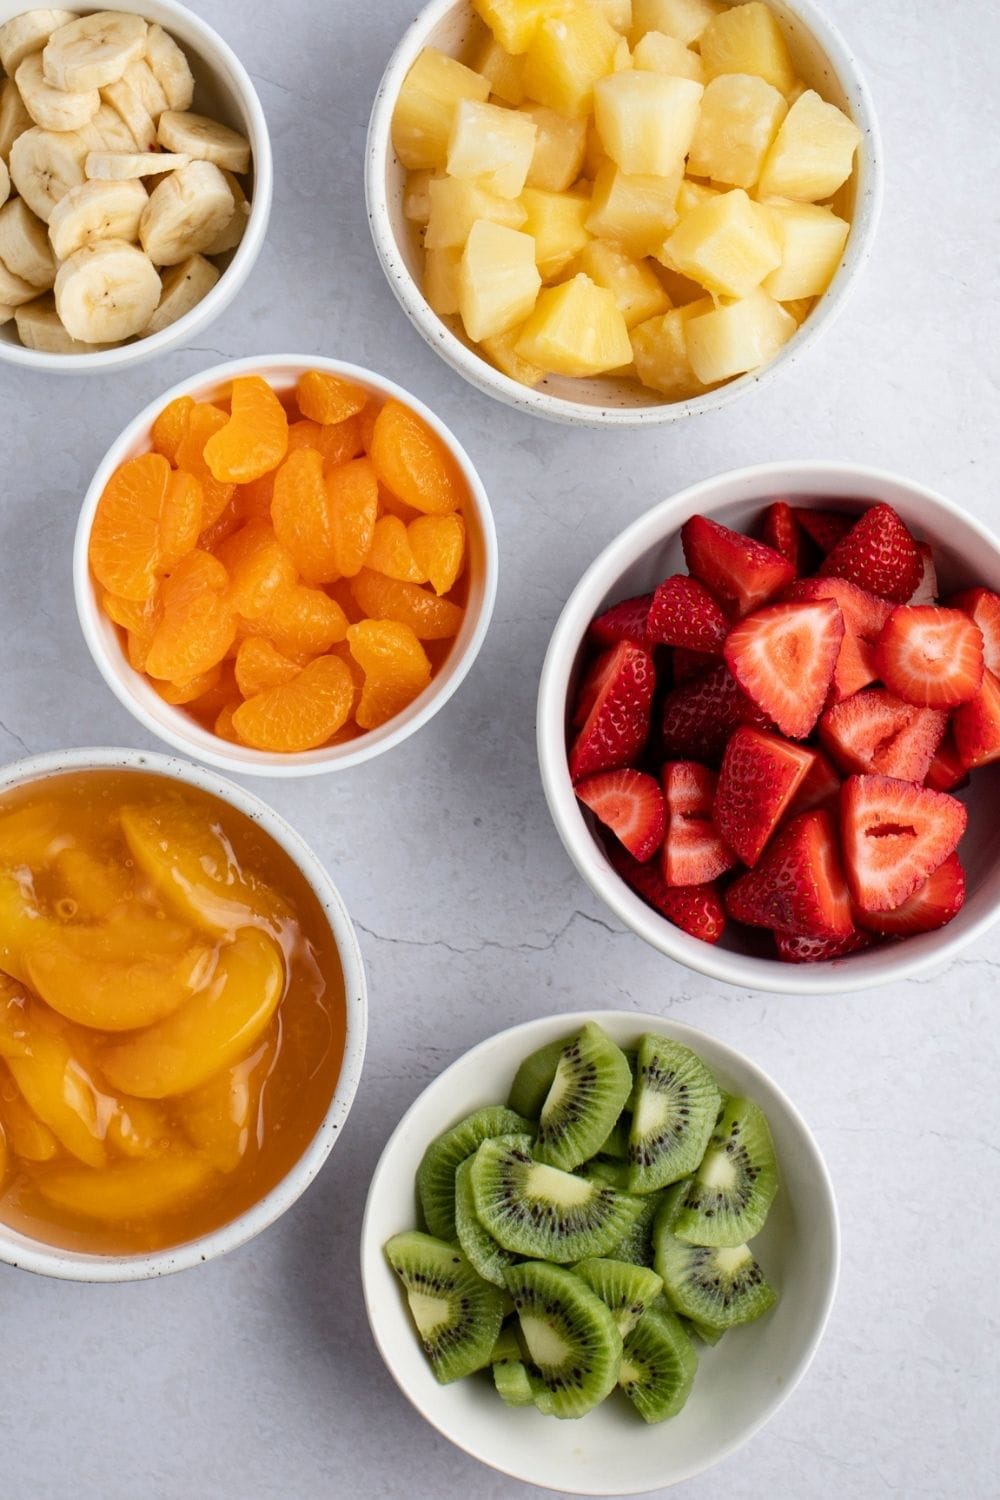 Fruit Salad Ingredients: Oranges, Strawberries, Pineapples, Kiwis, Bananas and Peach Pie Filling